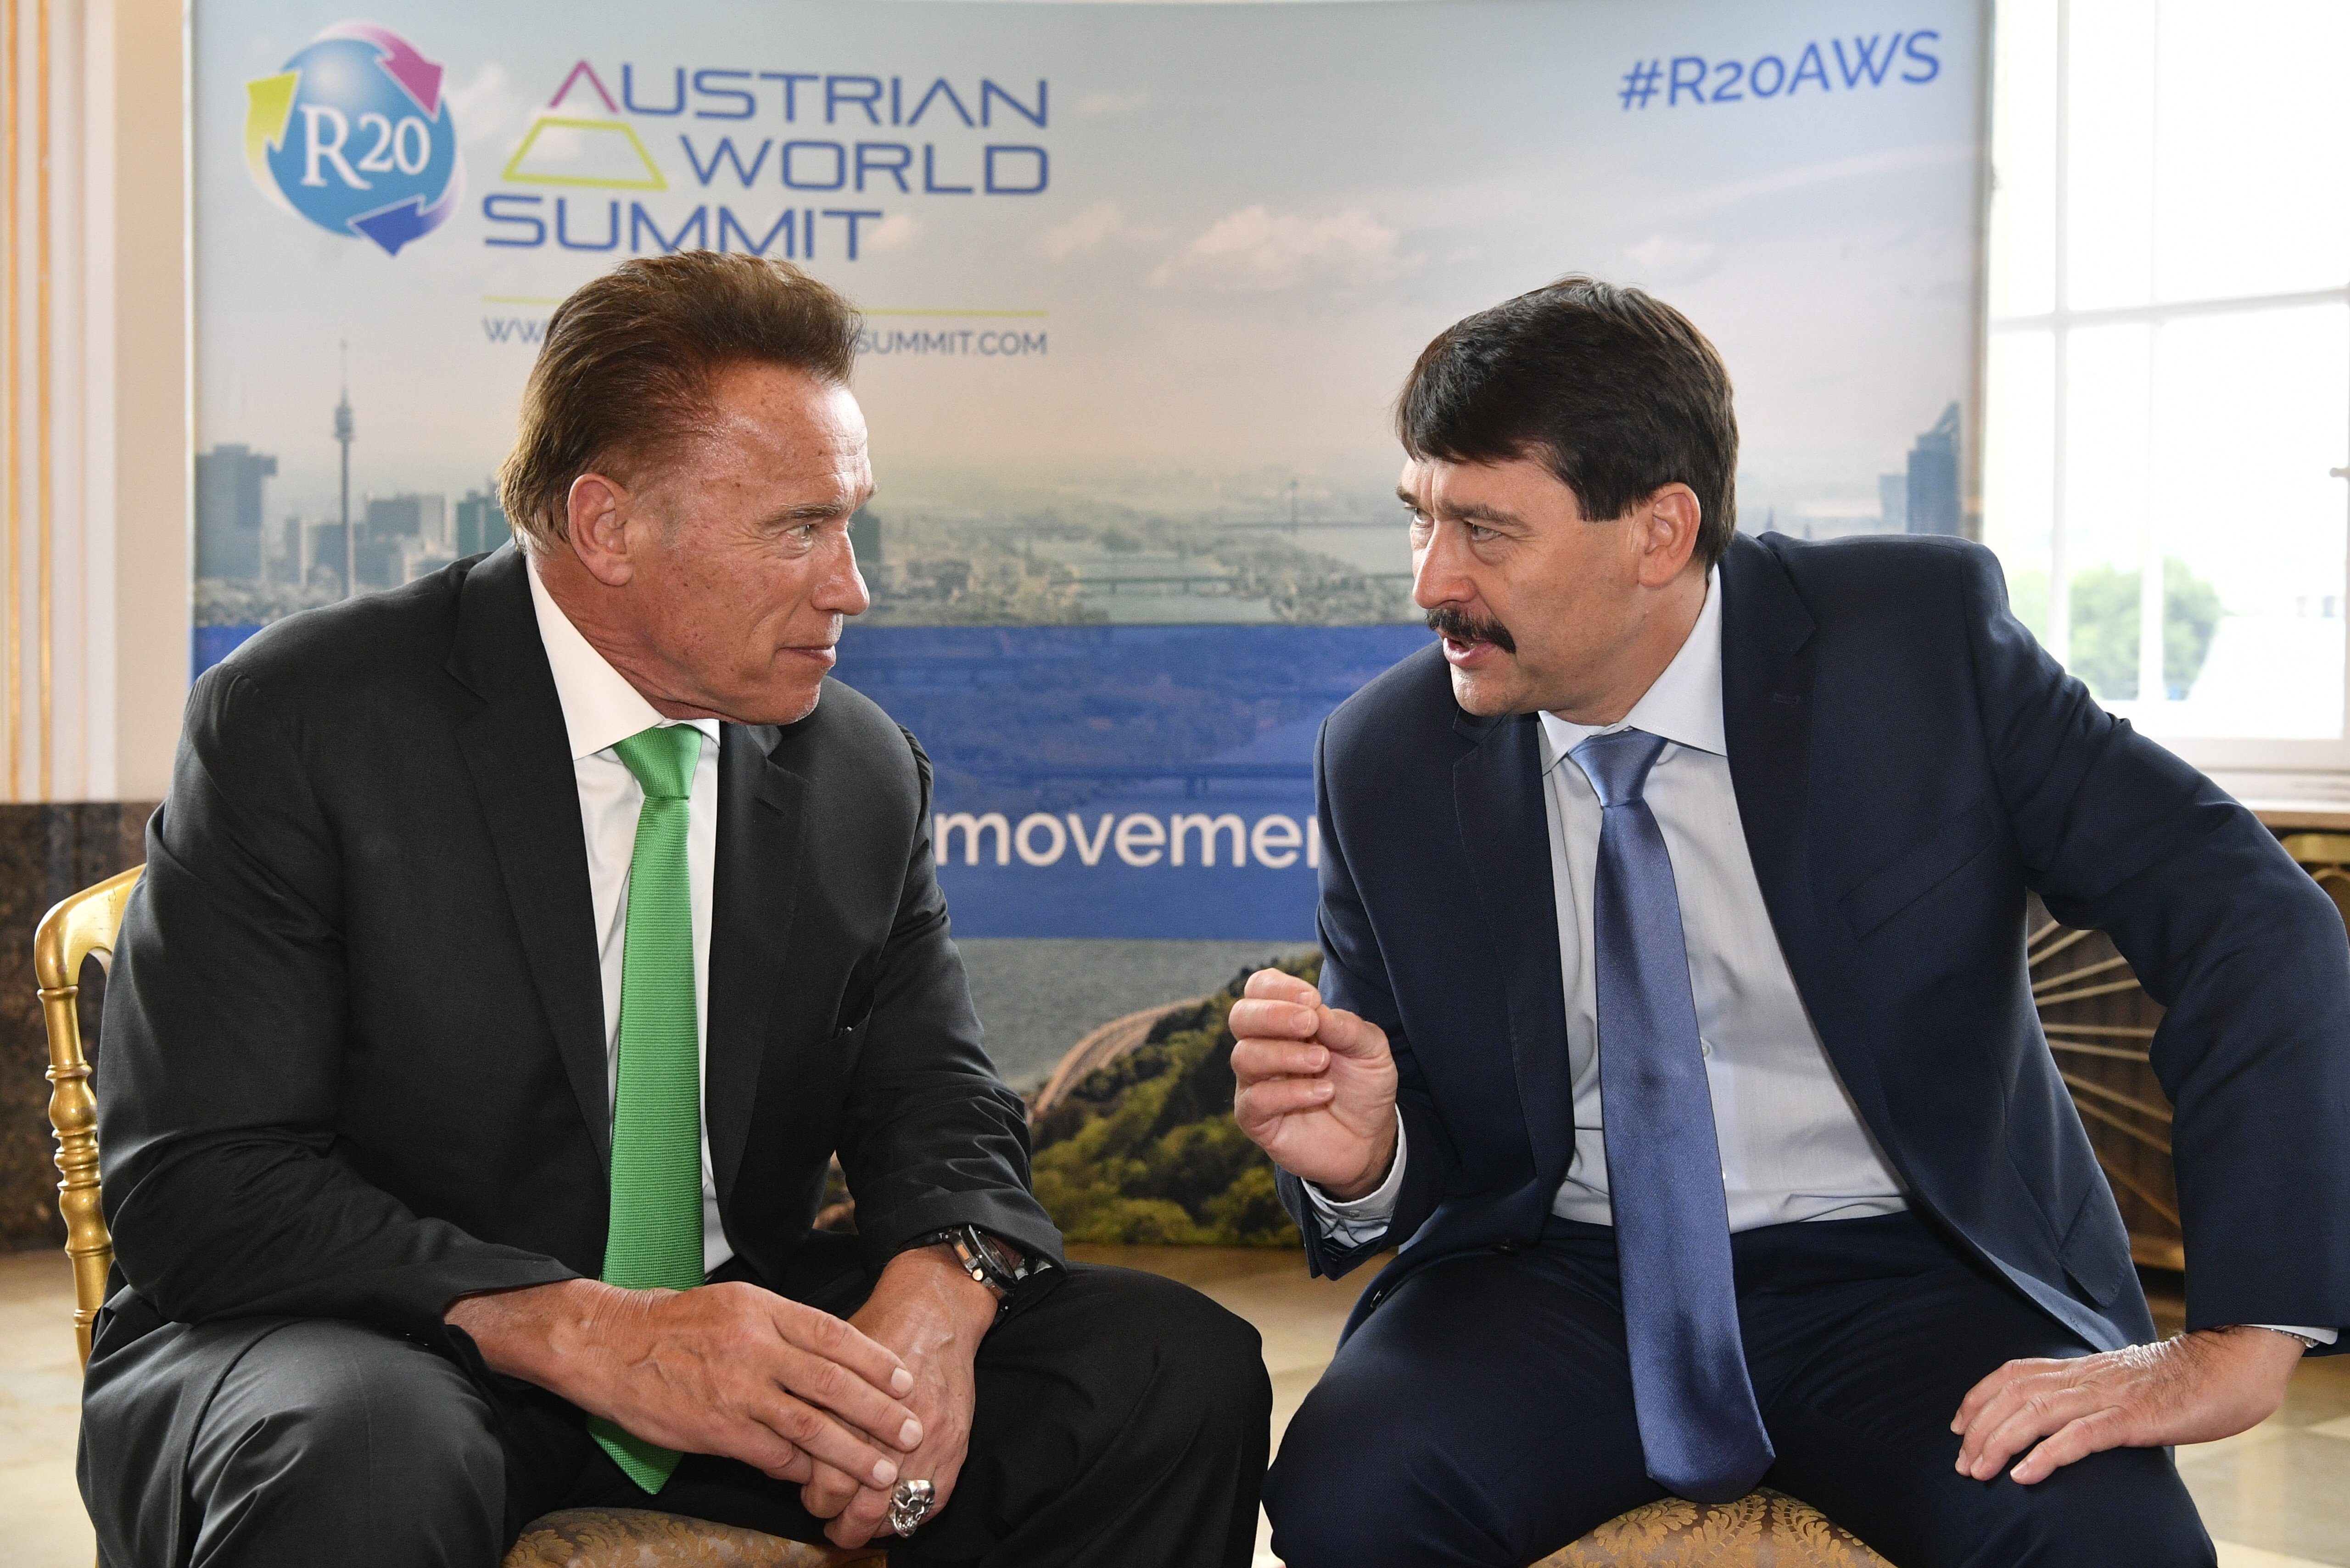 Cumbre mundial austriaca R20 - La lucha del presidente Áder Hungría contra el cambio climático da resultados